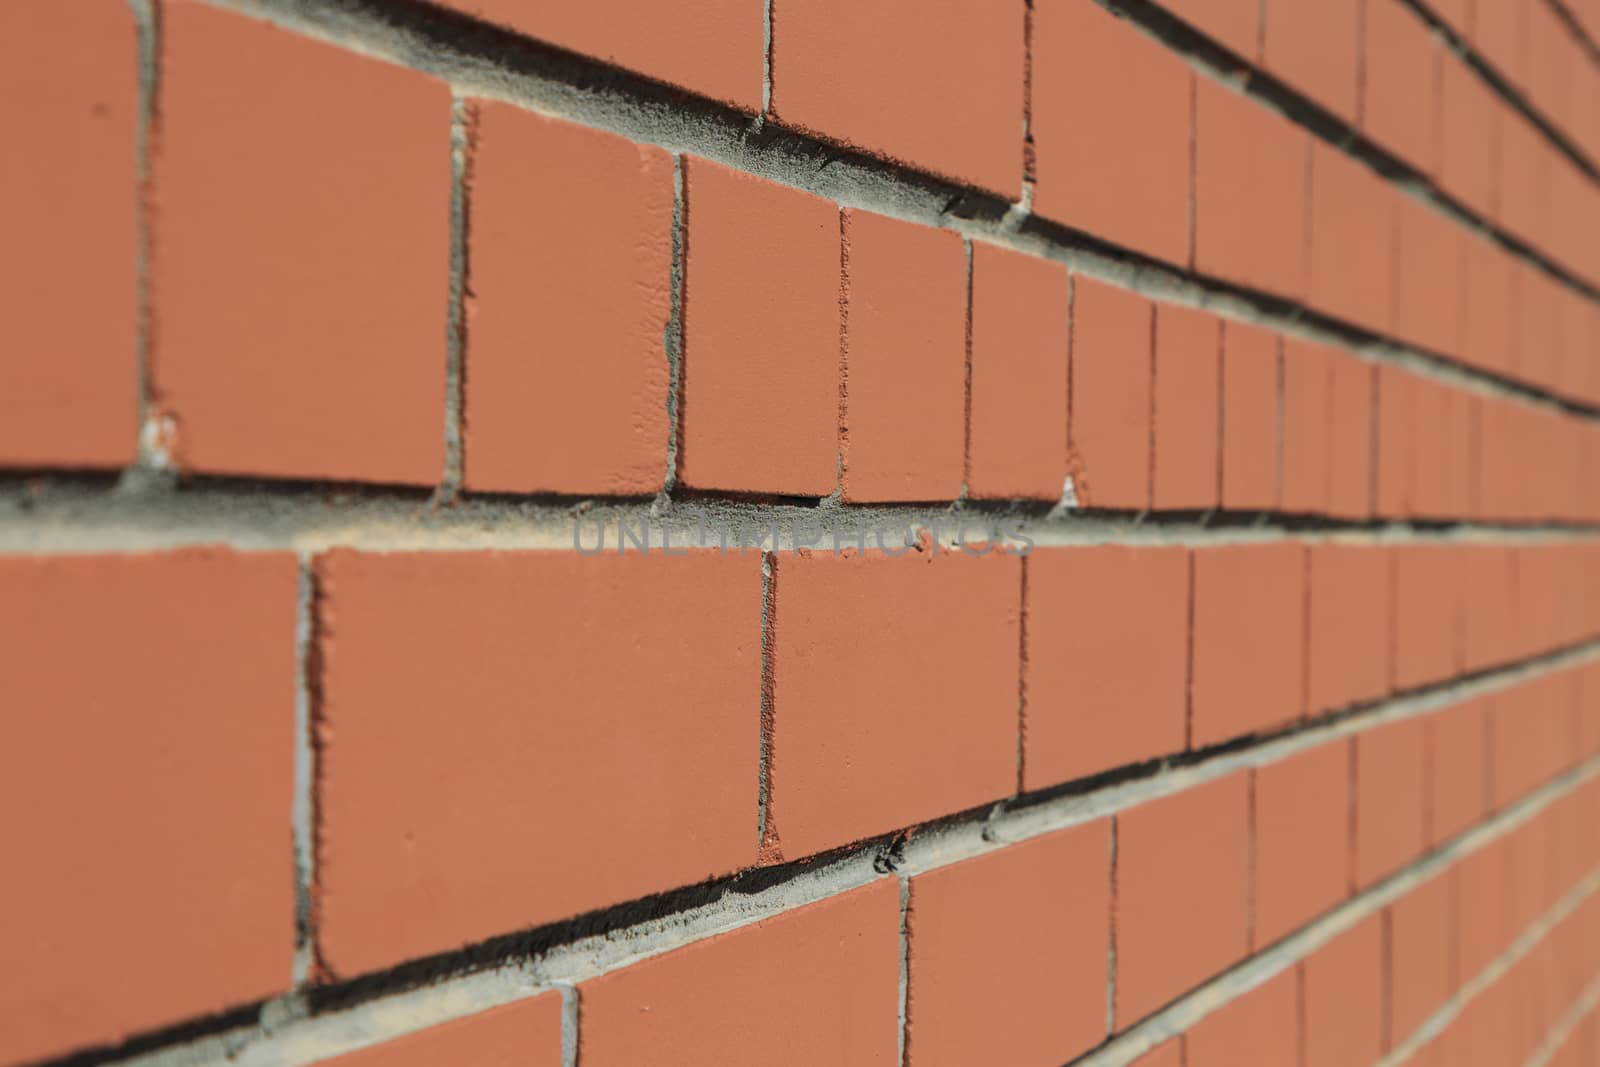 Brown brick wall at a 45 degree angle. Front close-up view.